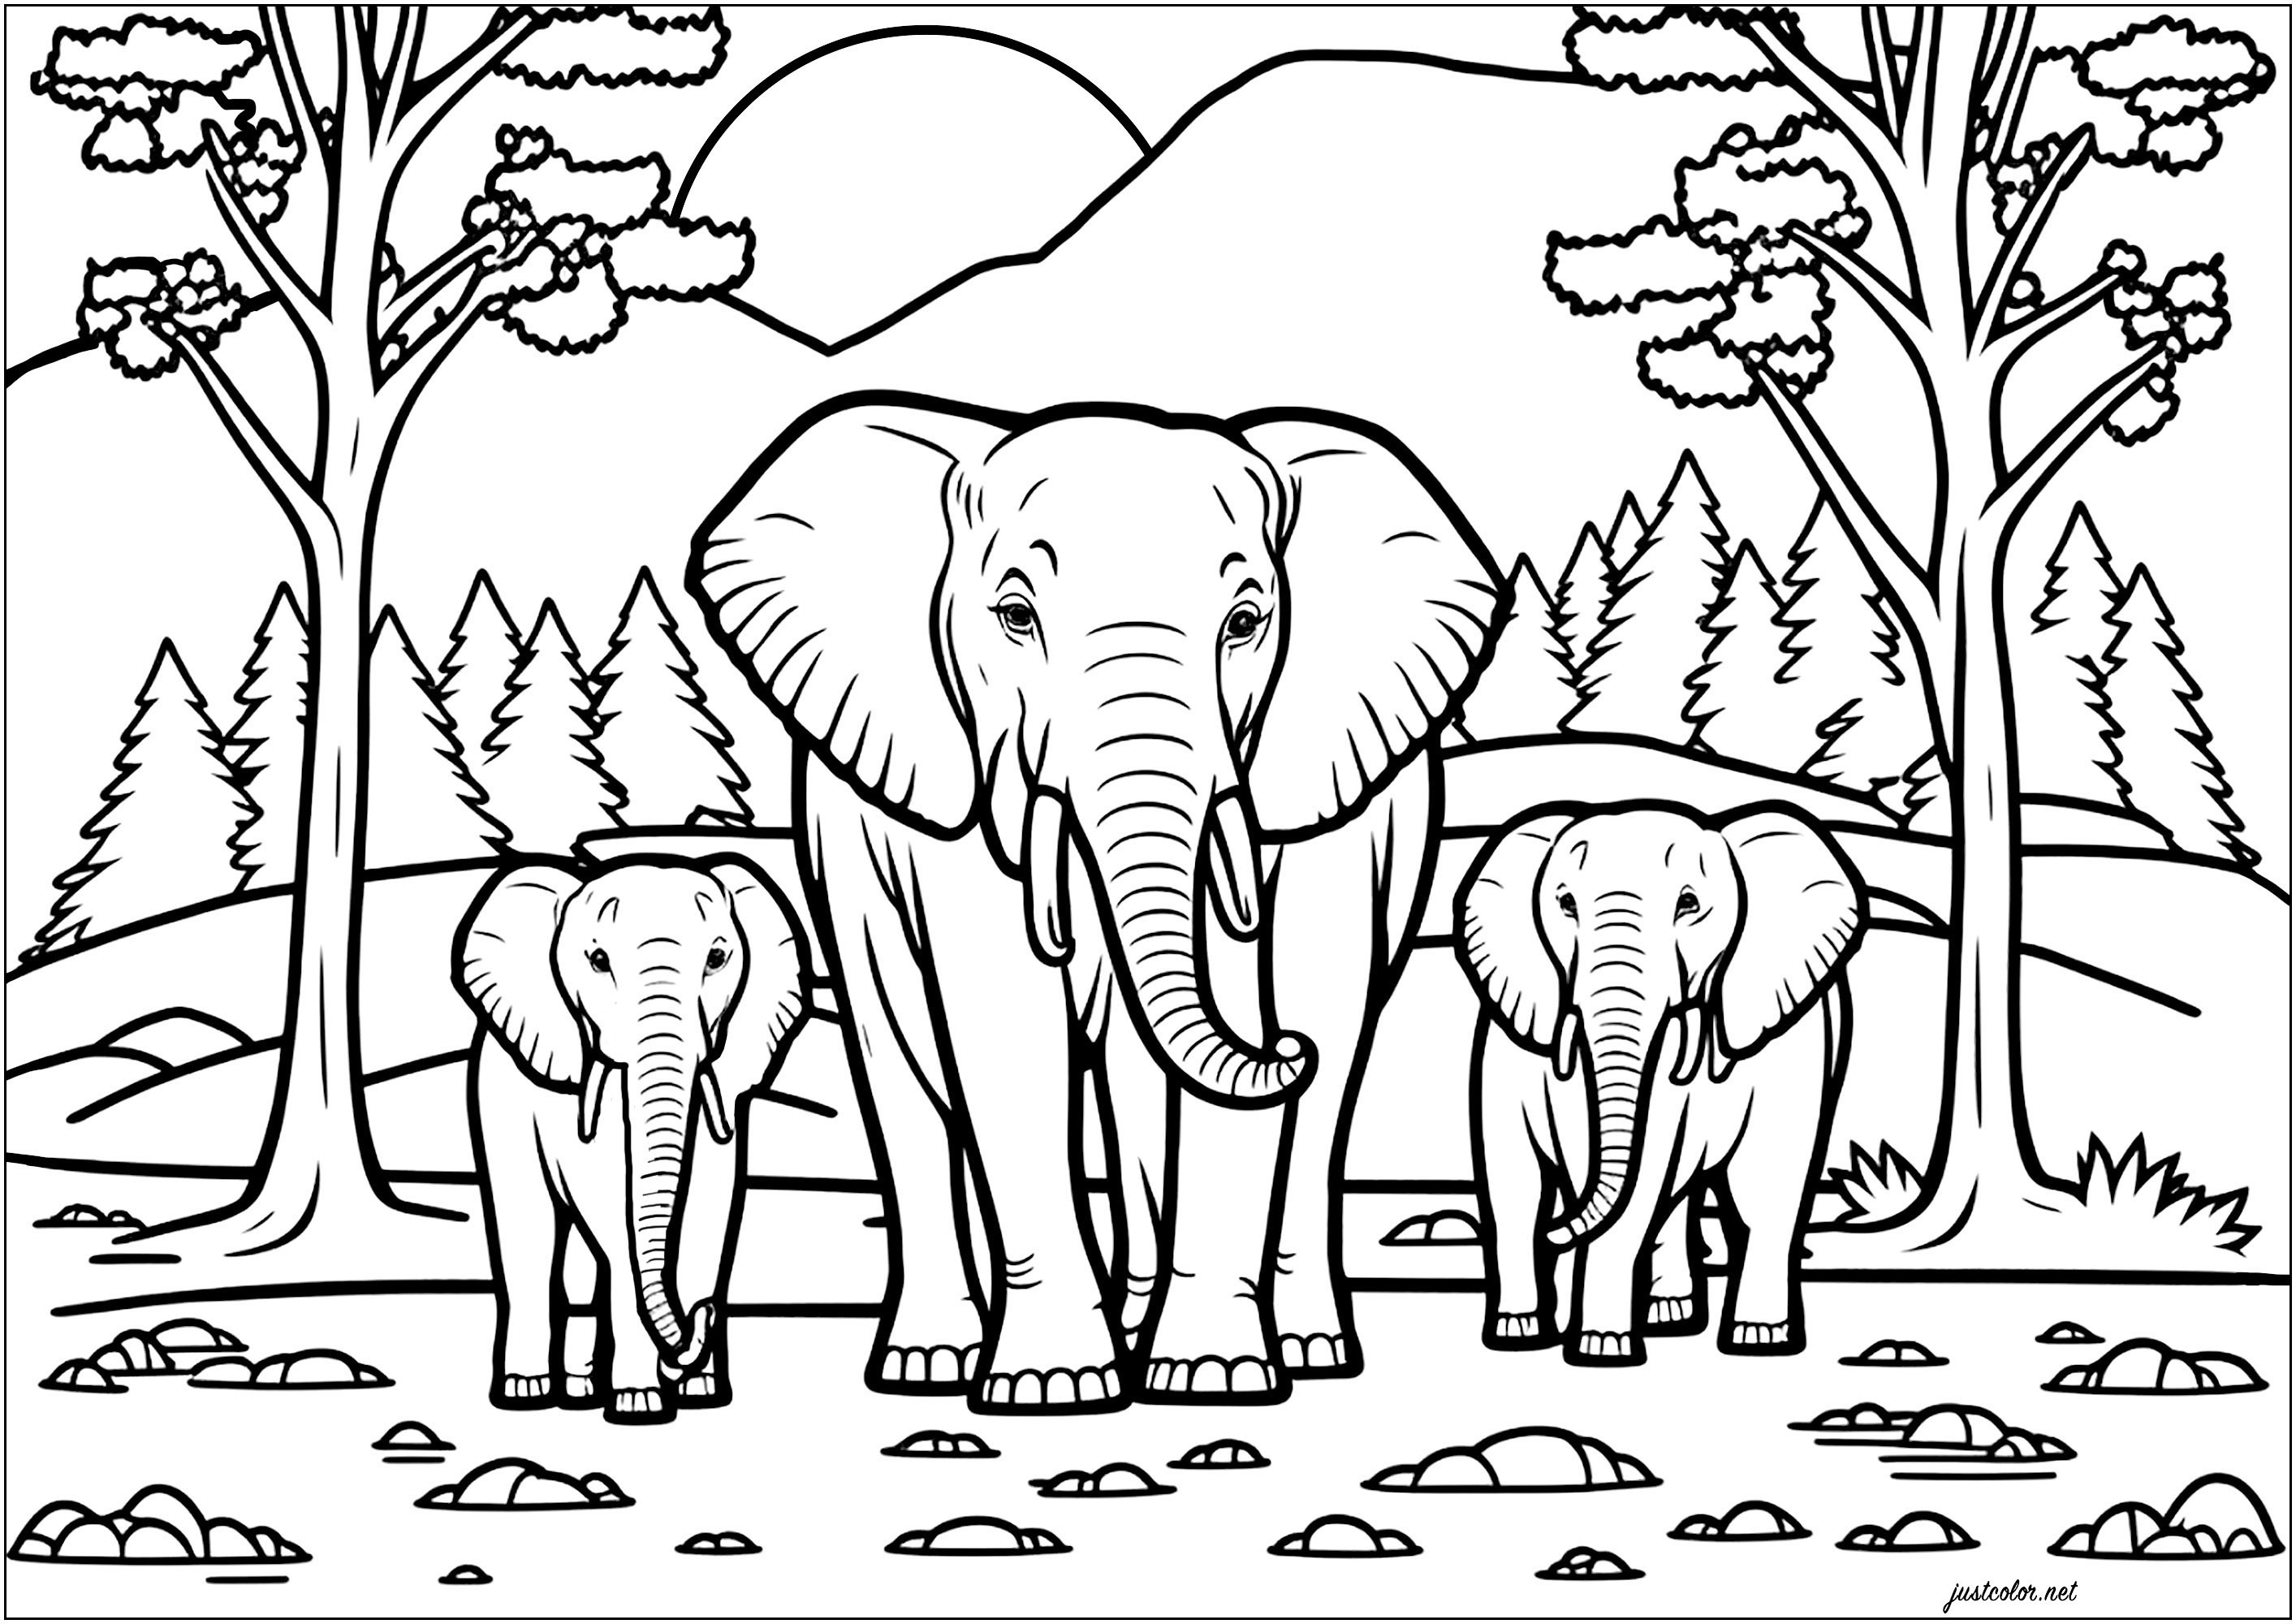 Famiglia di elefanti nella savana. Sullo sfondo: begli alberi e una montagna dietro la quale si vede sorgere il sole.